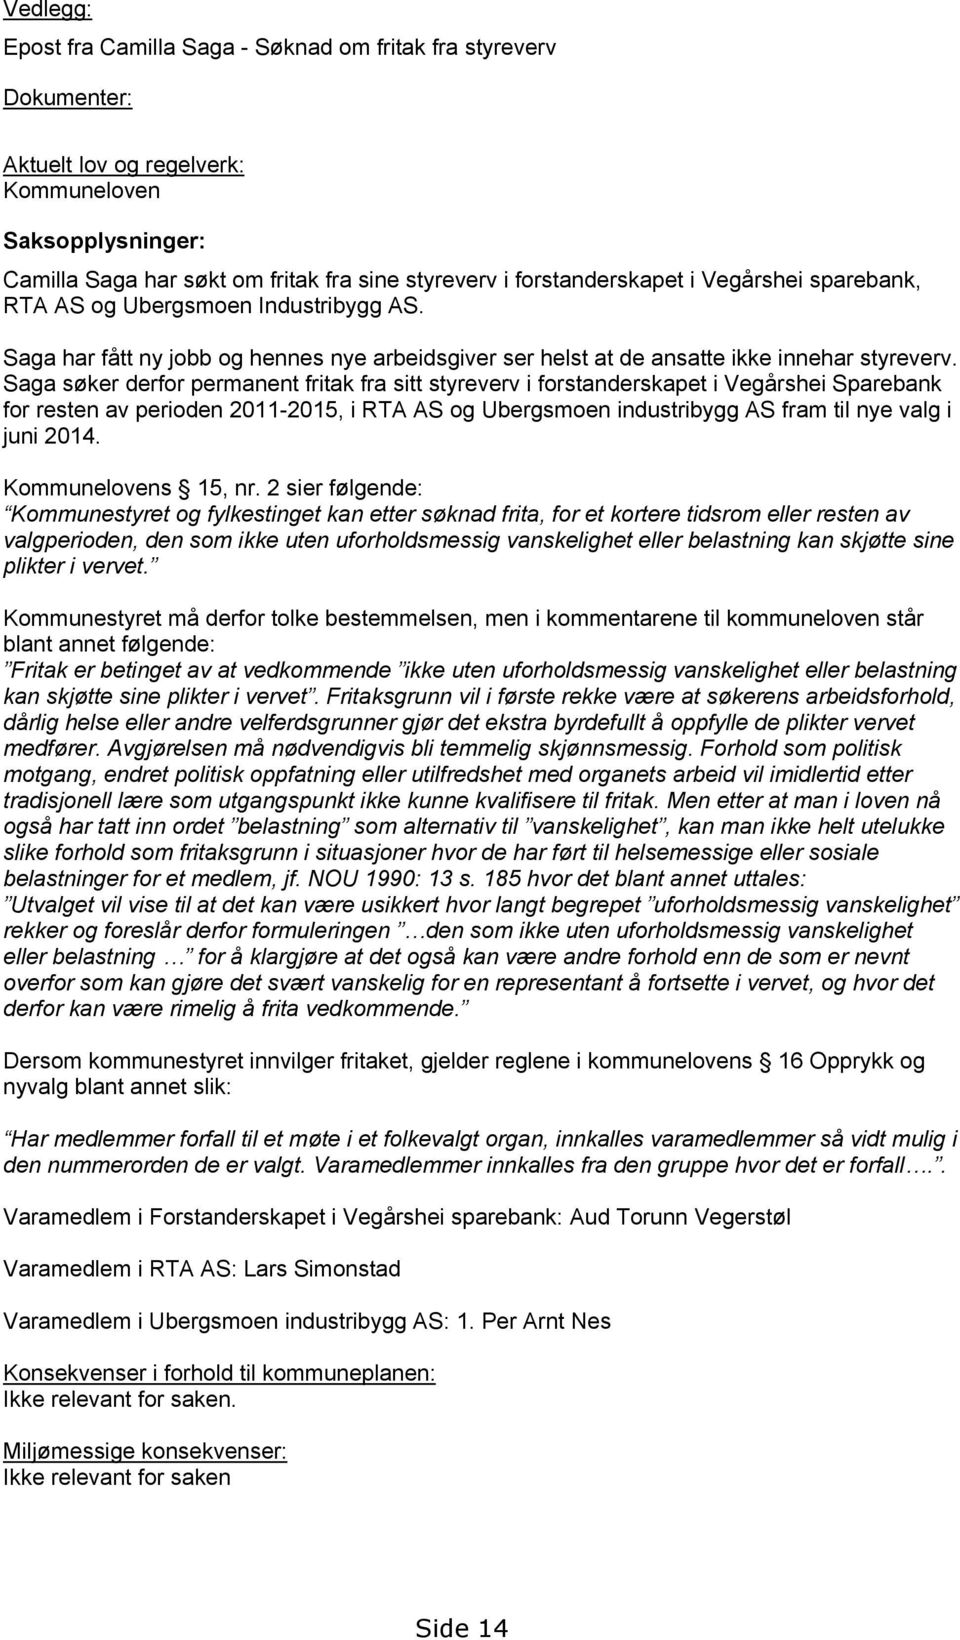 Saga søker derfor permanent fritak fra sitt styreverv i forstanderskapet i Vegårshei Sparebank for resten av perioden 2011-2015, i RTA AS og Ubergsmoen industribygg AS fram til nye valg i juni 2014.